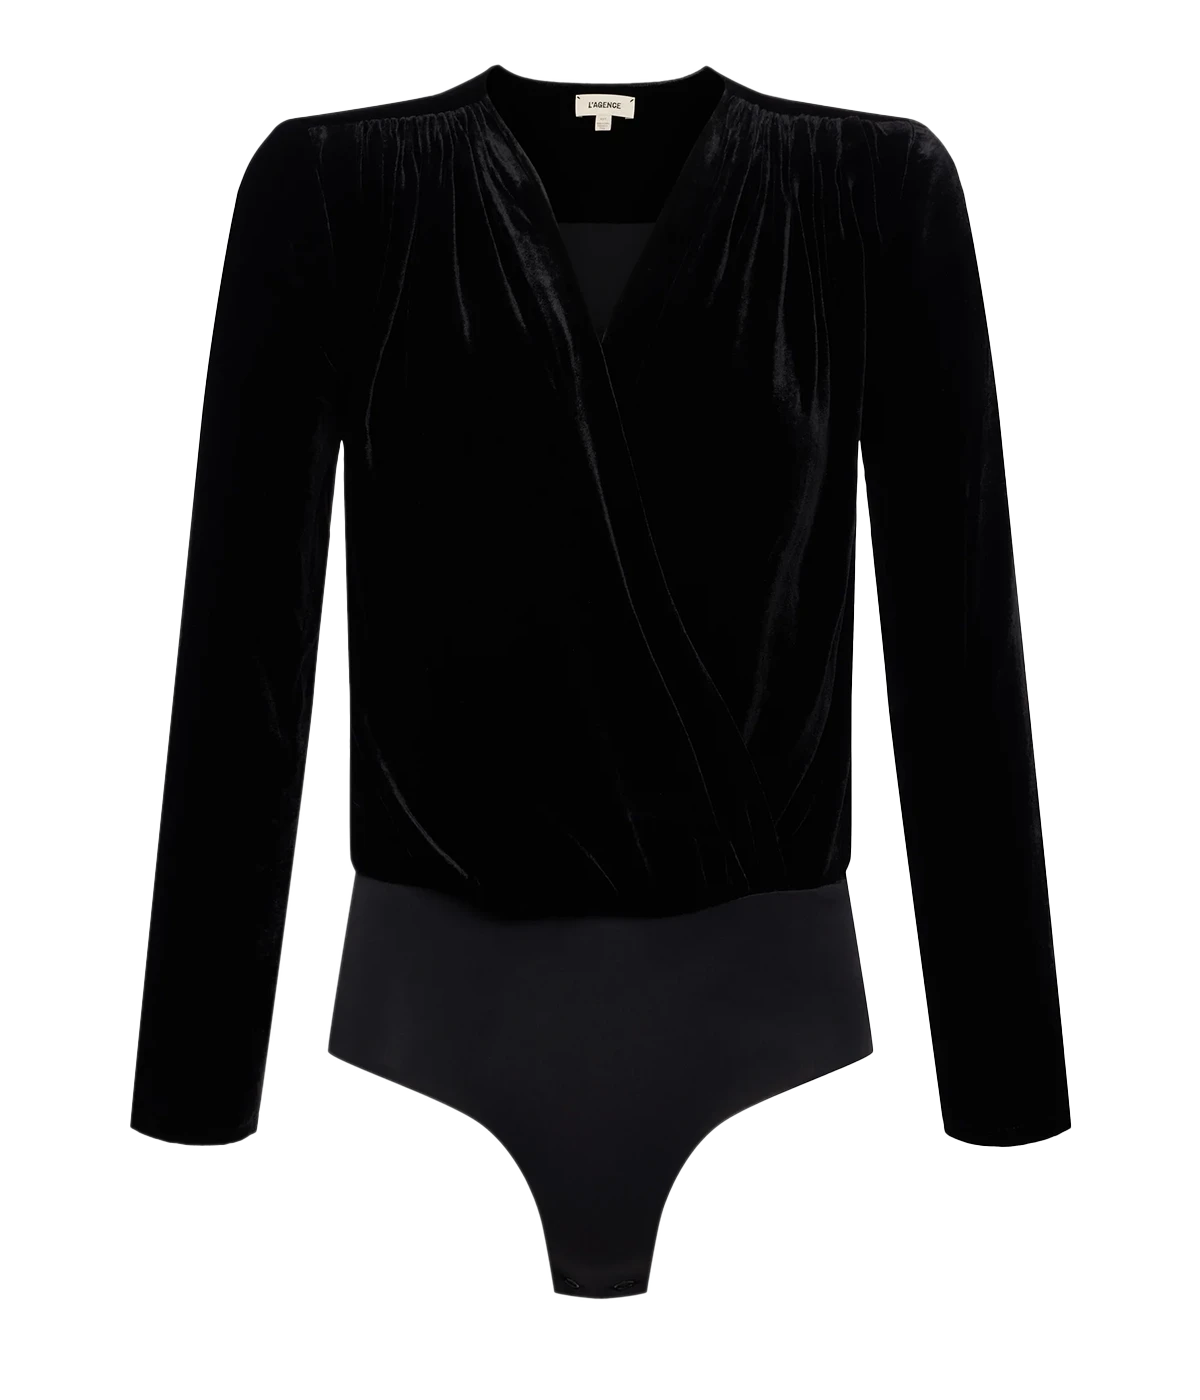 Kallie Crossover Bodysuit in Black